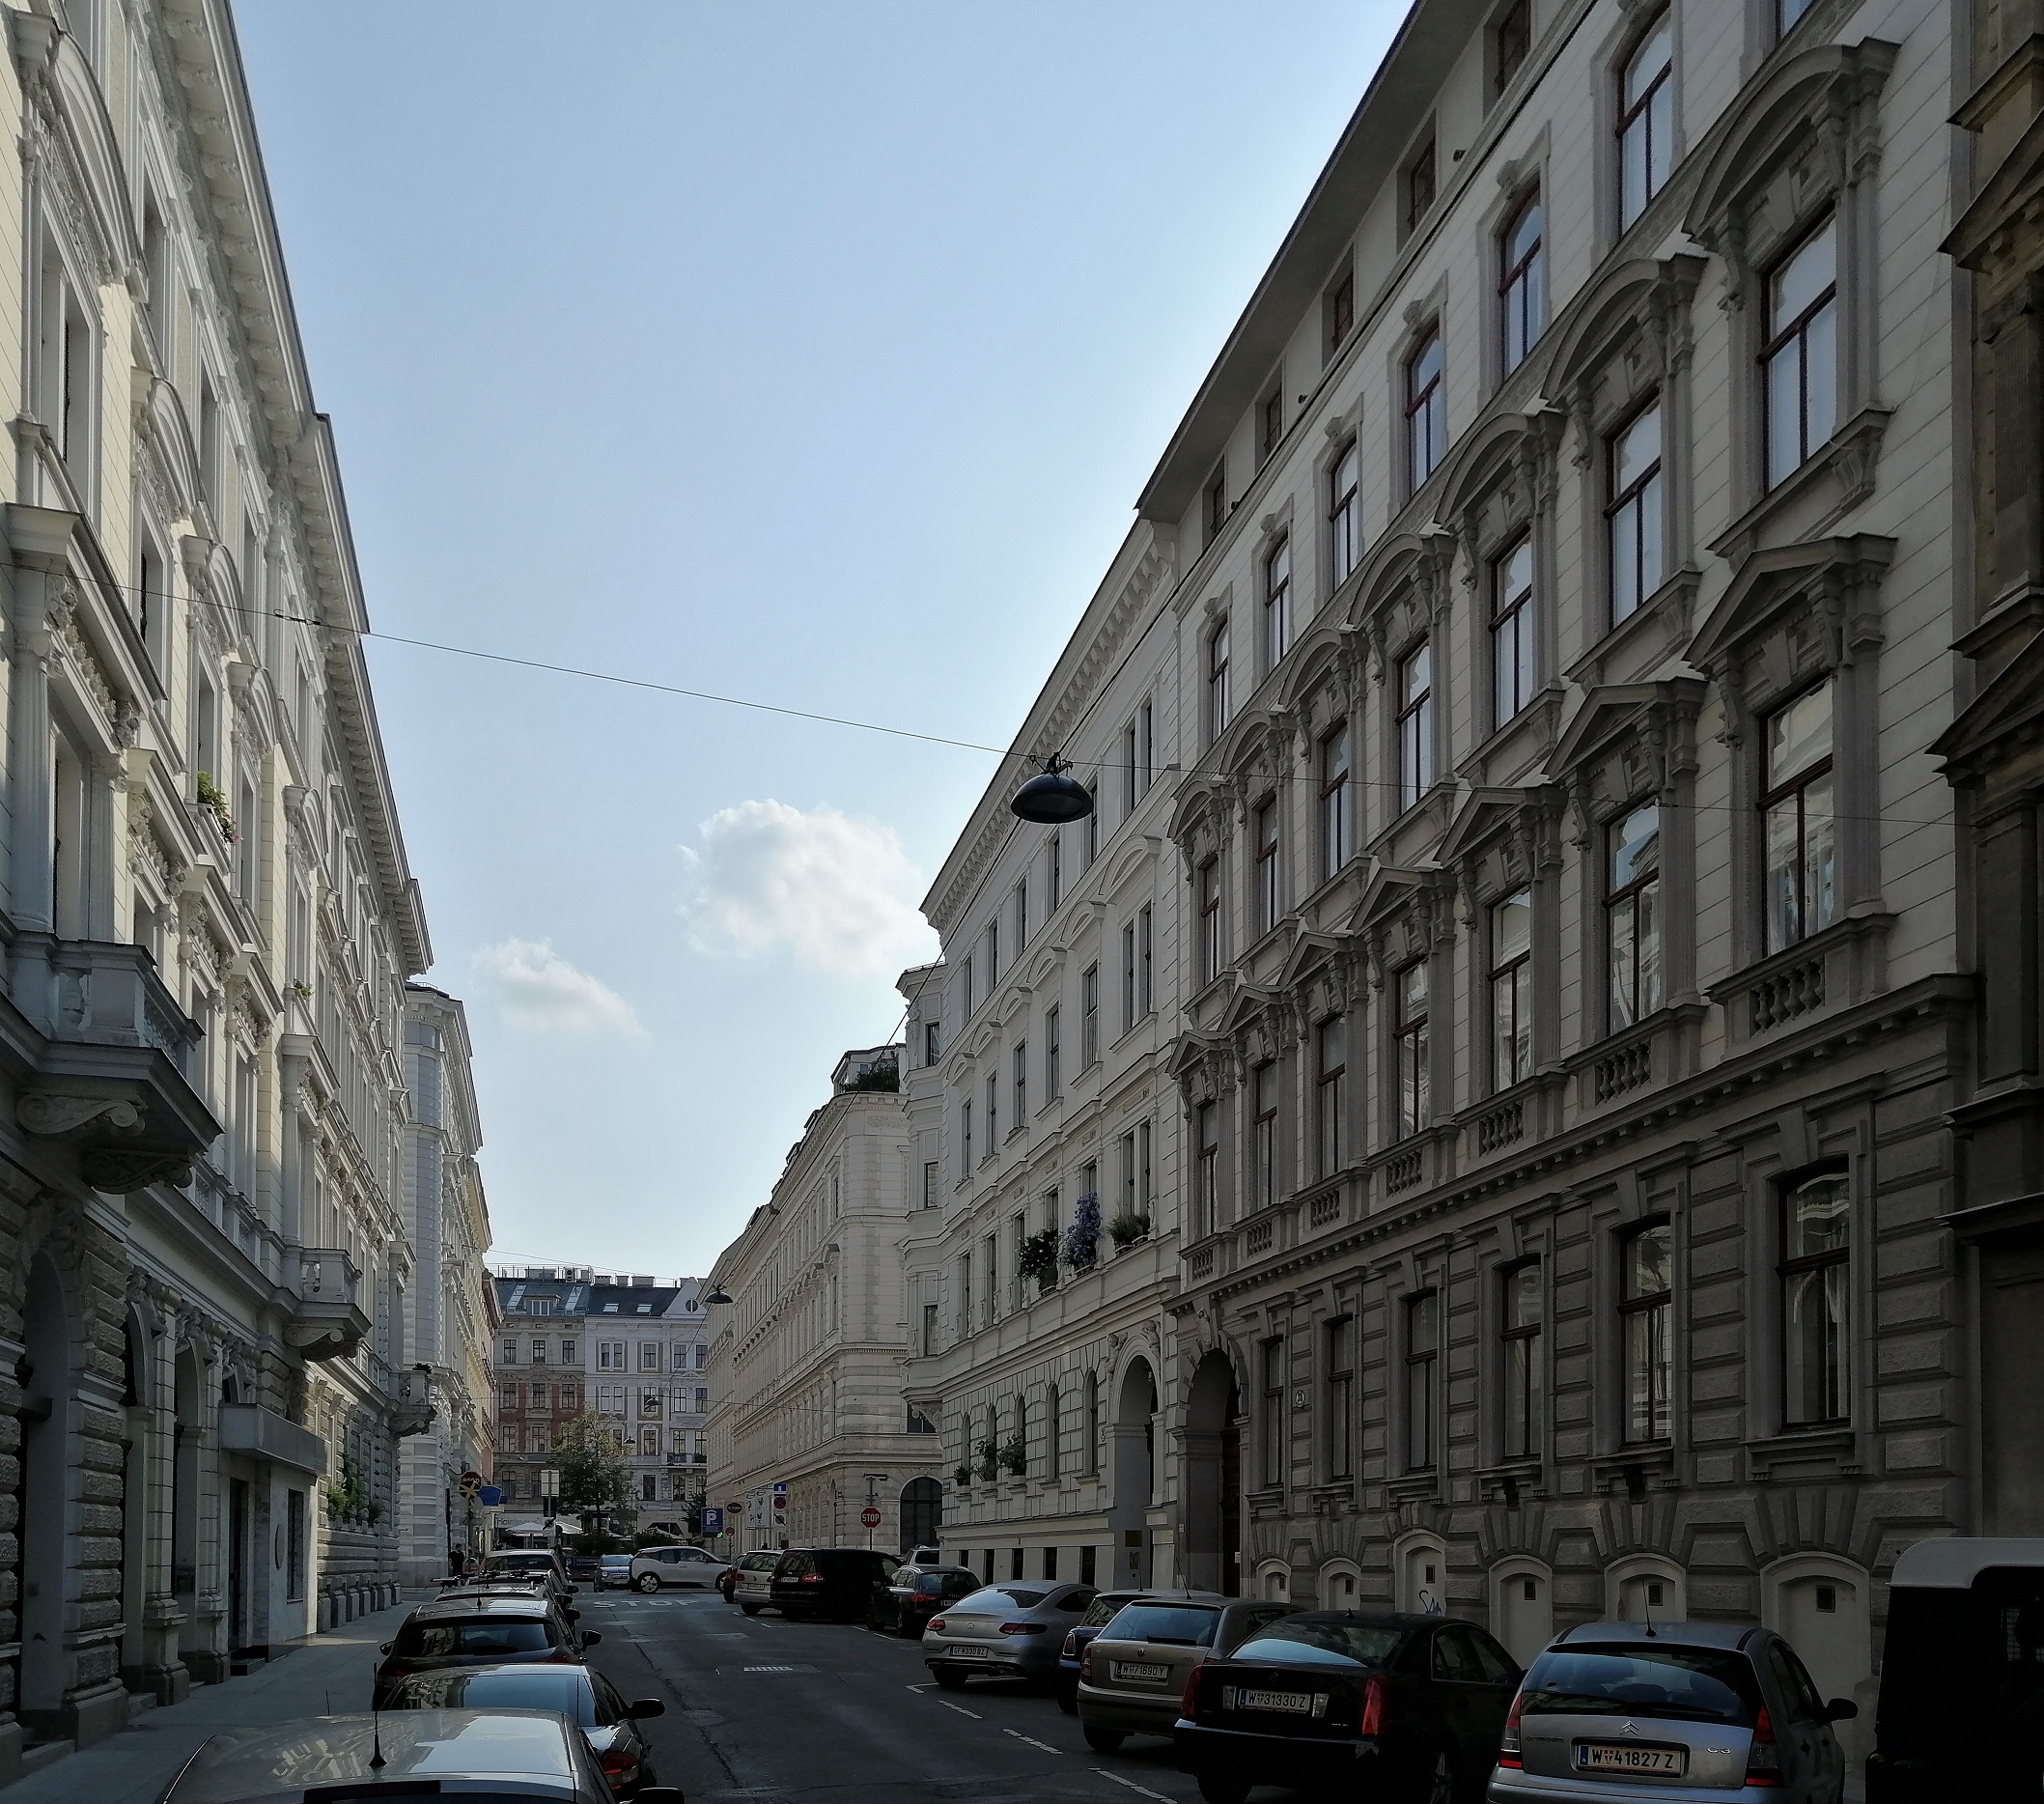 Street with Gründerzeit houses